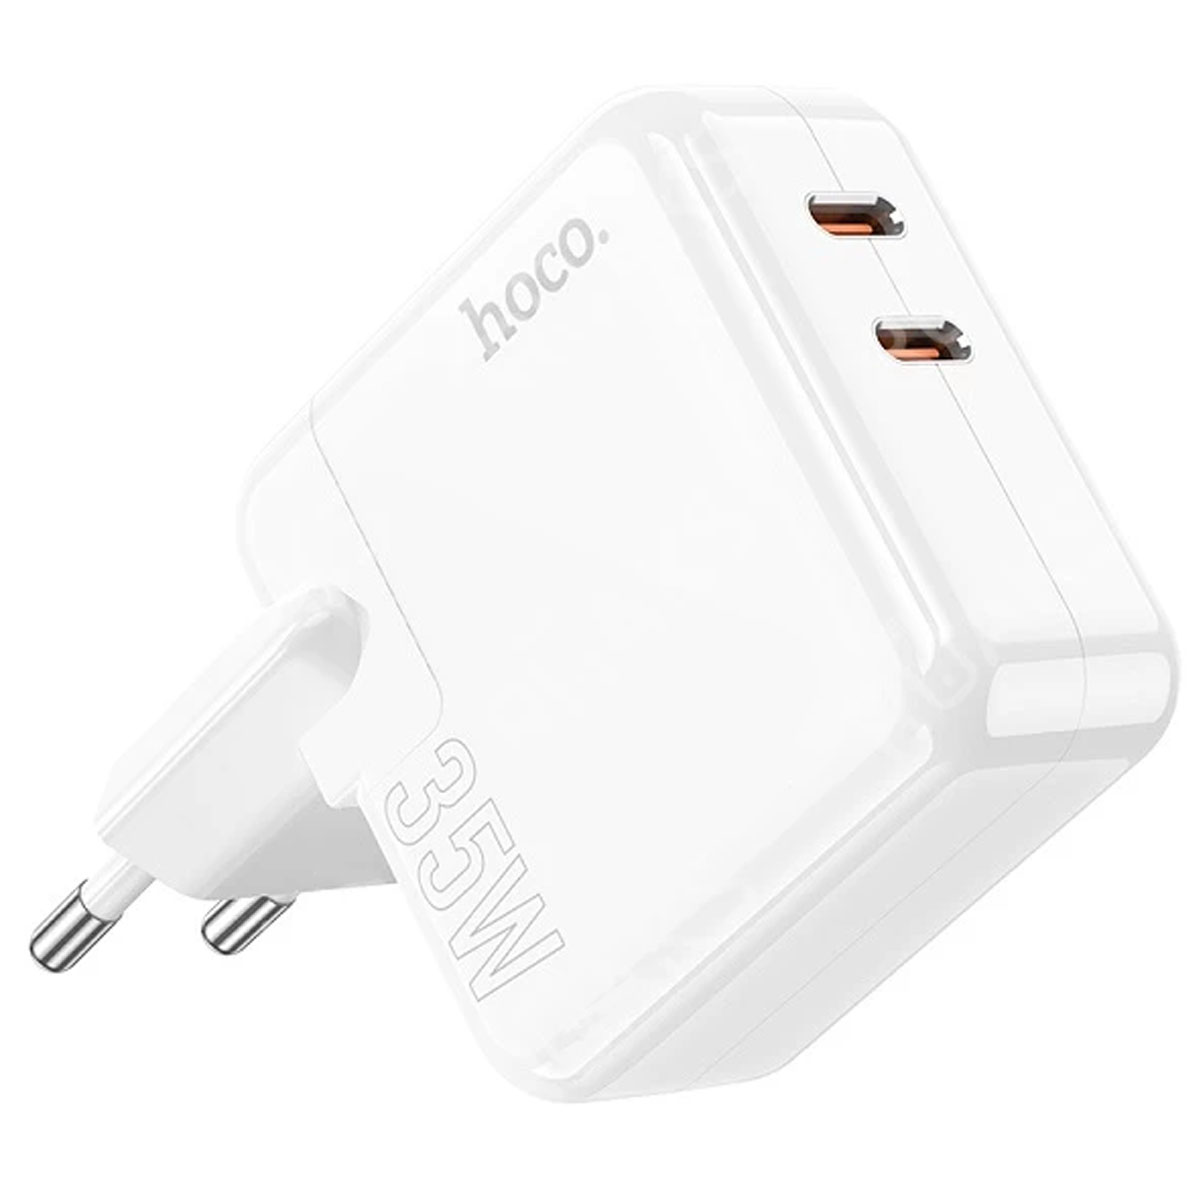 СЗУ (Сетевое зарядное устройство) HOCO C110A Lucky, 35W, 2 USB Type C, QC3.0, цвет белый